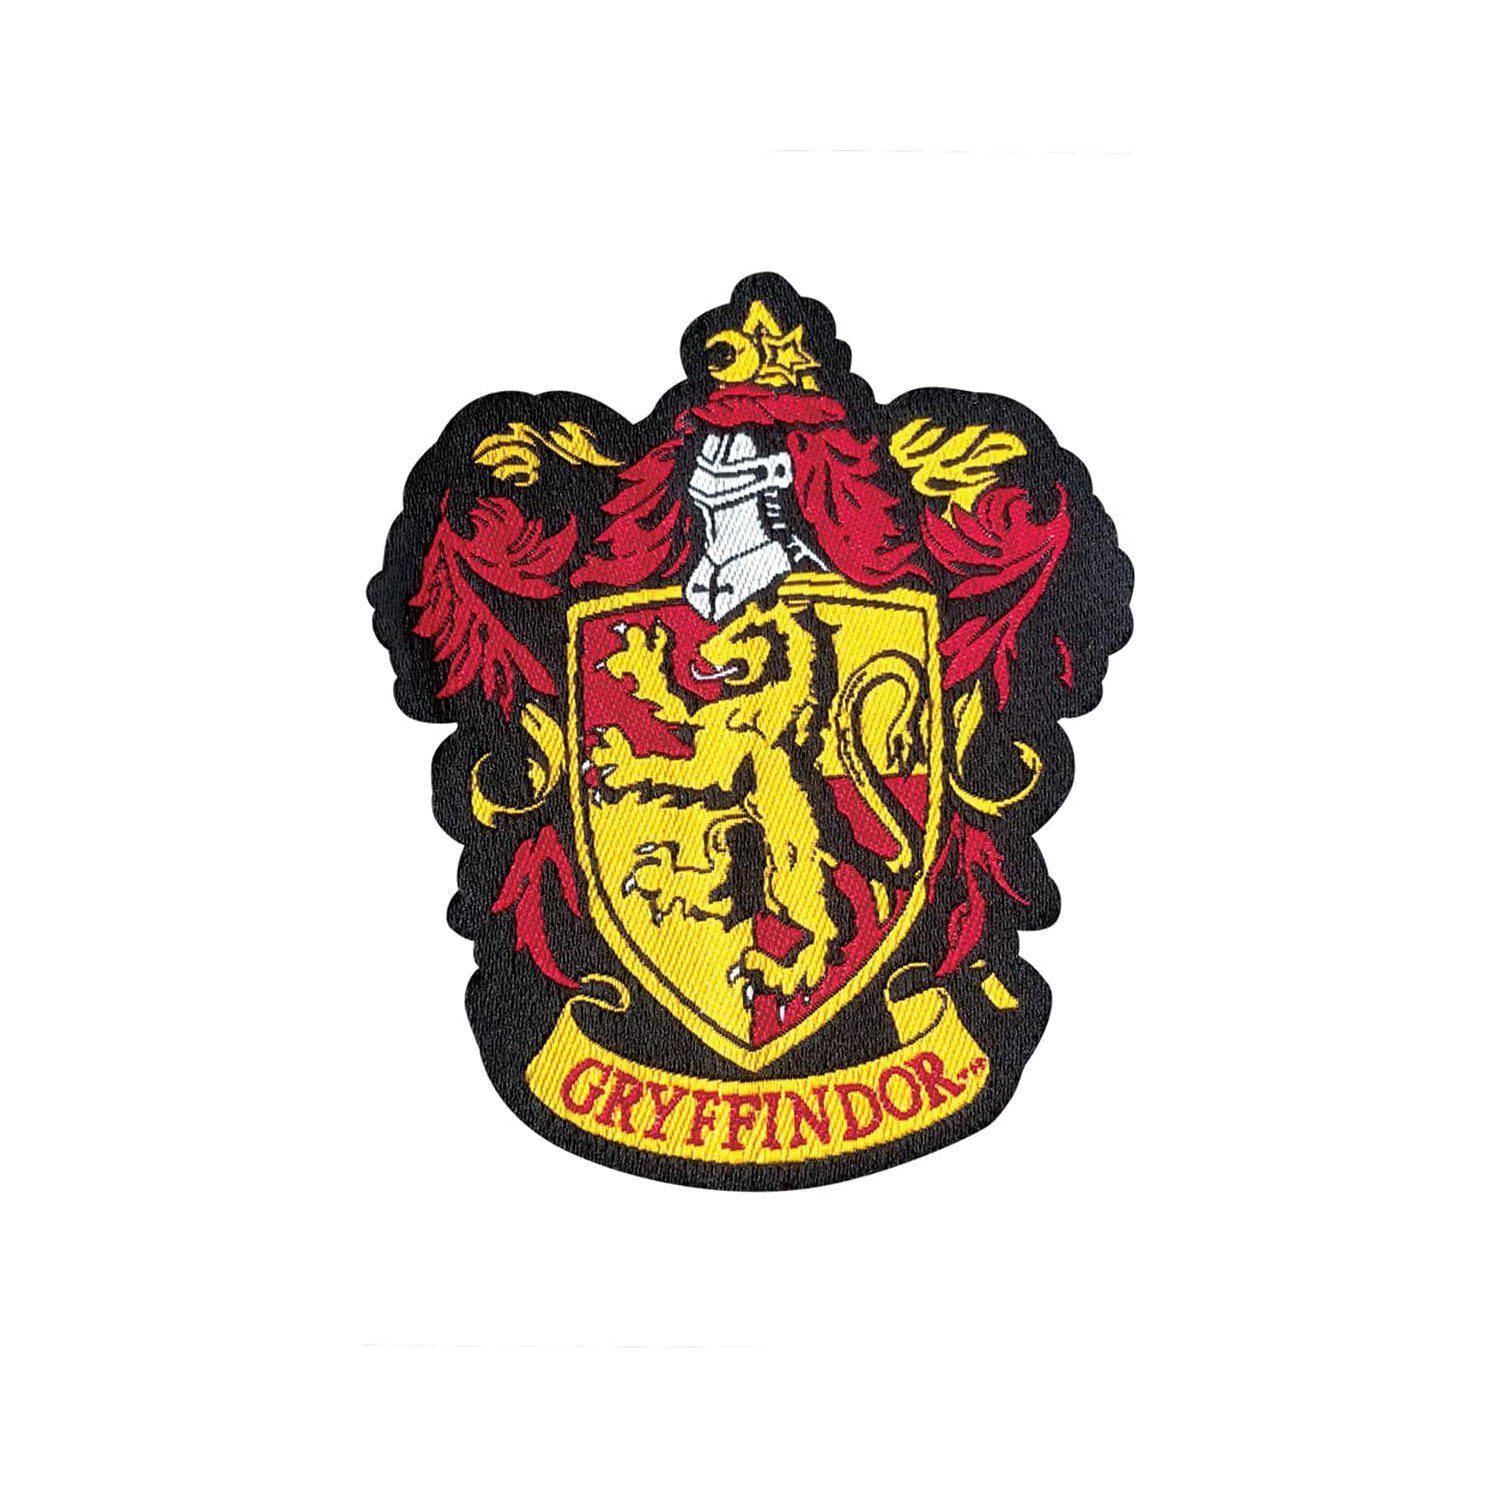 rot Stricken Harry Potter - Harry Potter Strickmütze Gryffindor zum Mütze